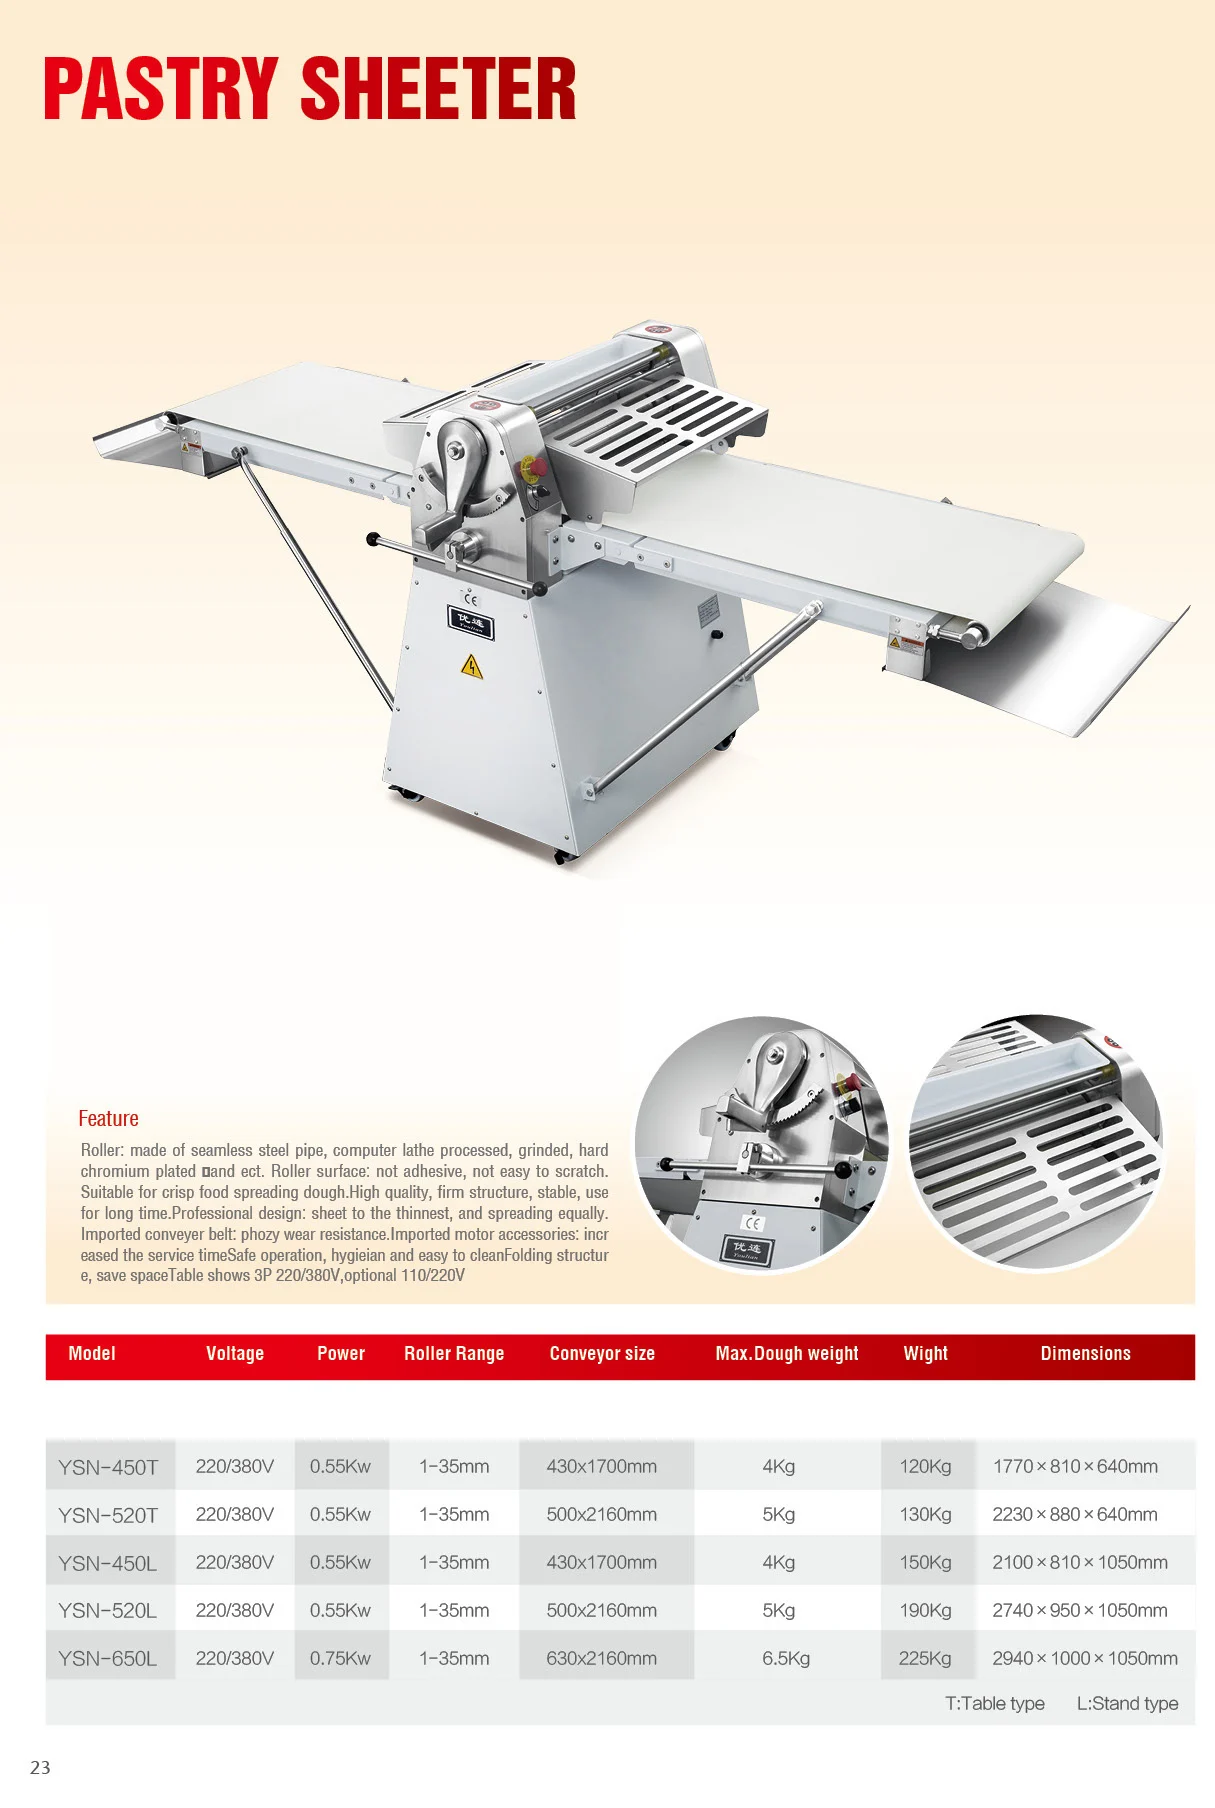 New Vertical Industrial Bread Dough Sheeter Desktop Crisp Pastry Food Mixing Machine for Sales